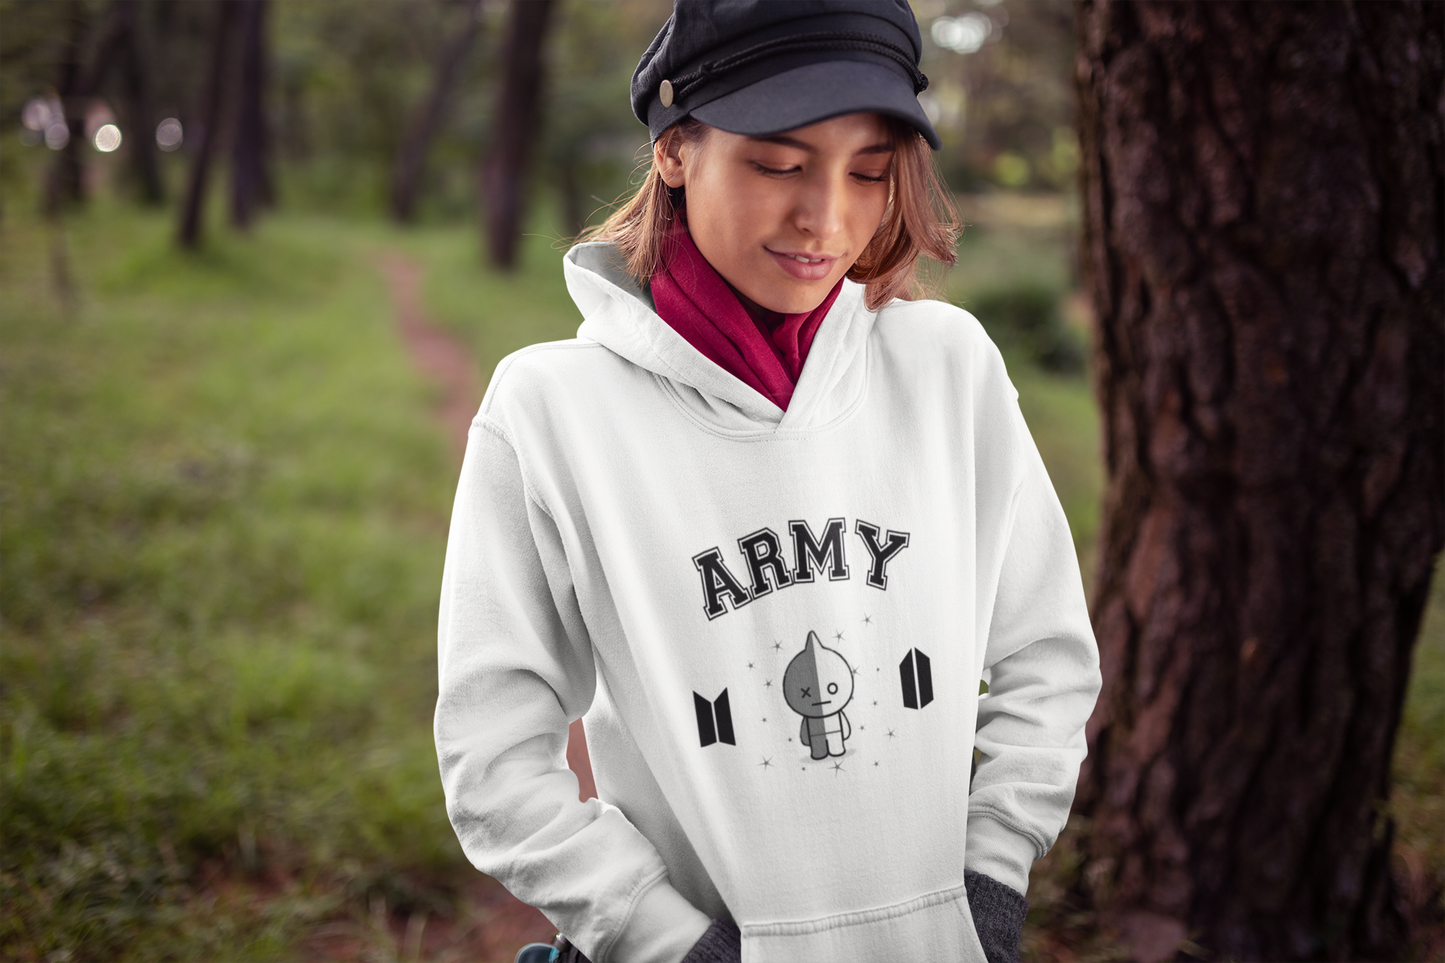 BT21 Van Hoodie BTS Army hooded Sweatshirt